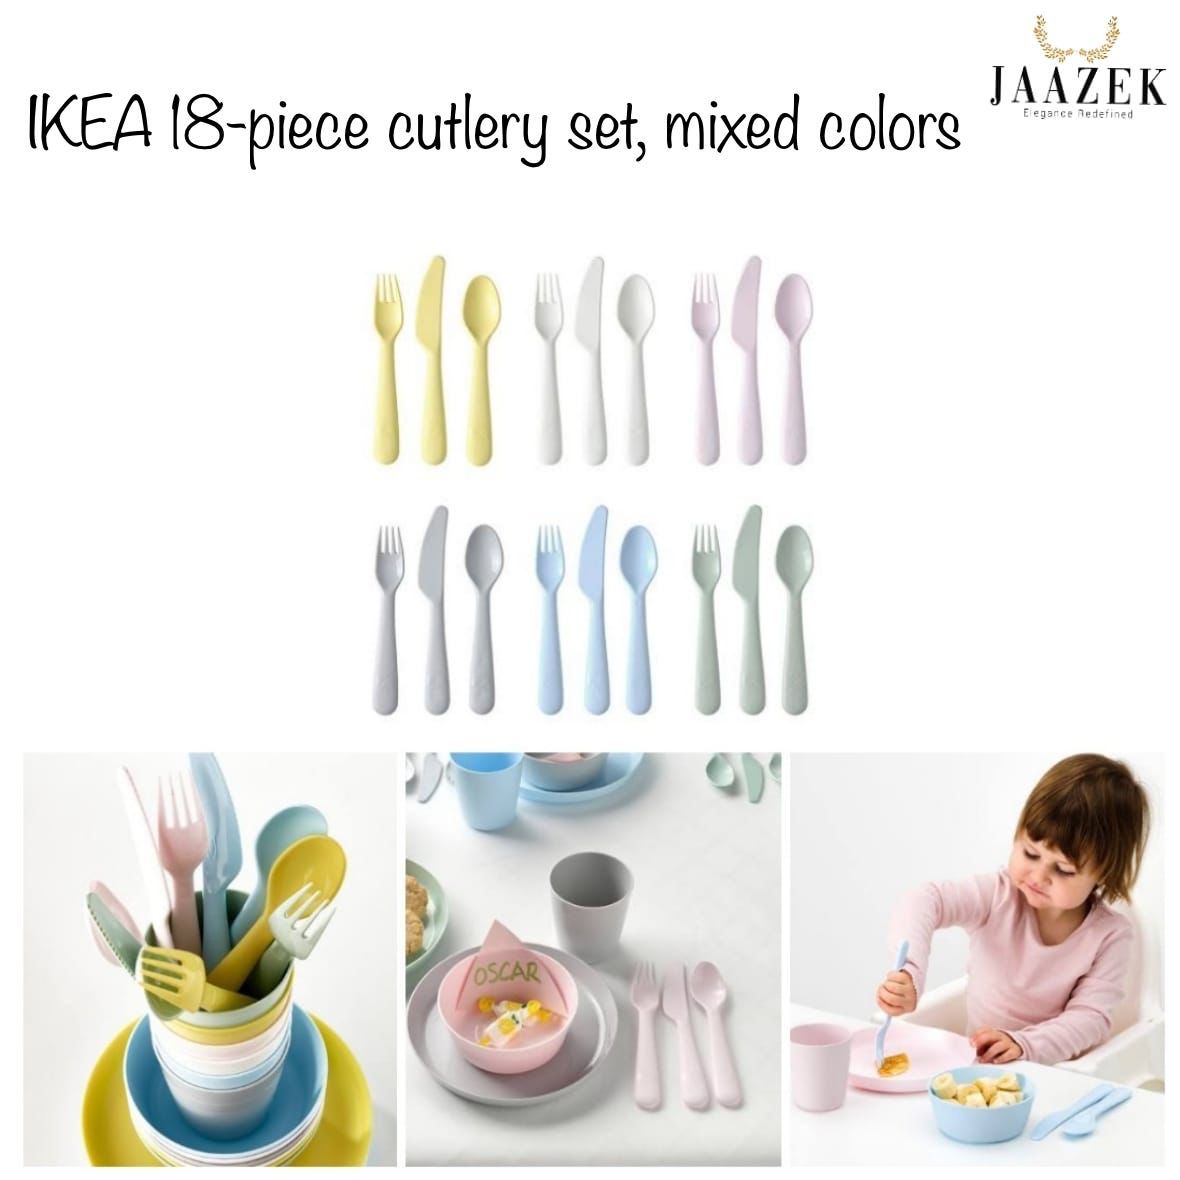 KALAS 18-piece flatware set, mixed colors - IKEA